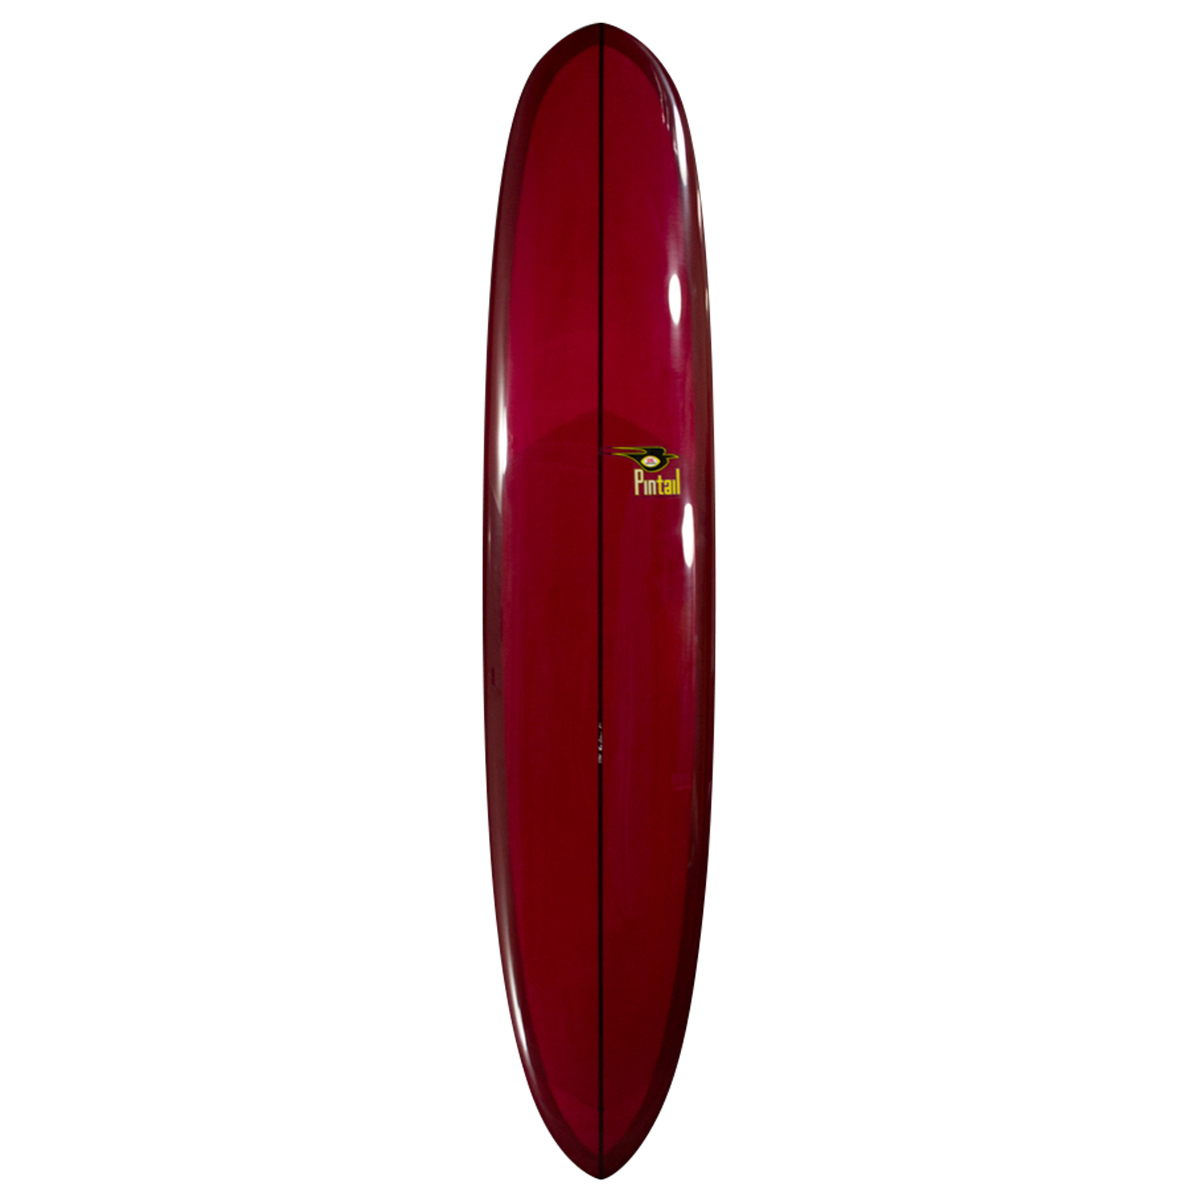 BING SURFBOARDS : Pintail Lightweight